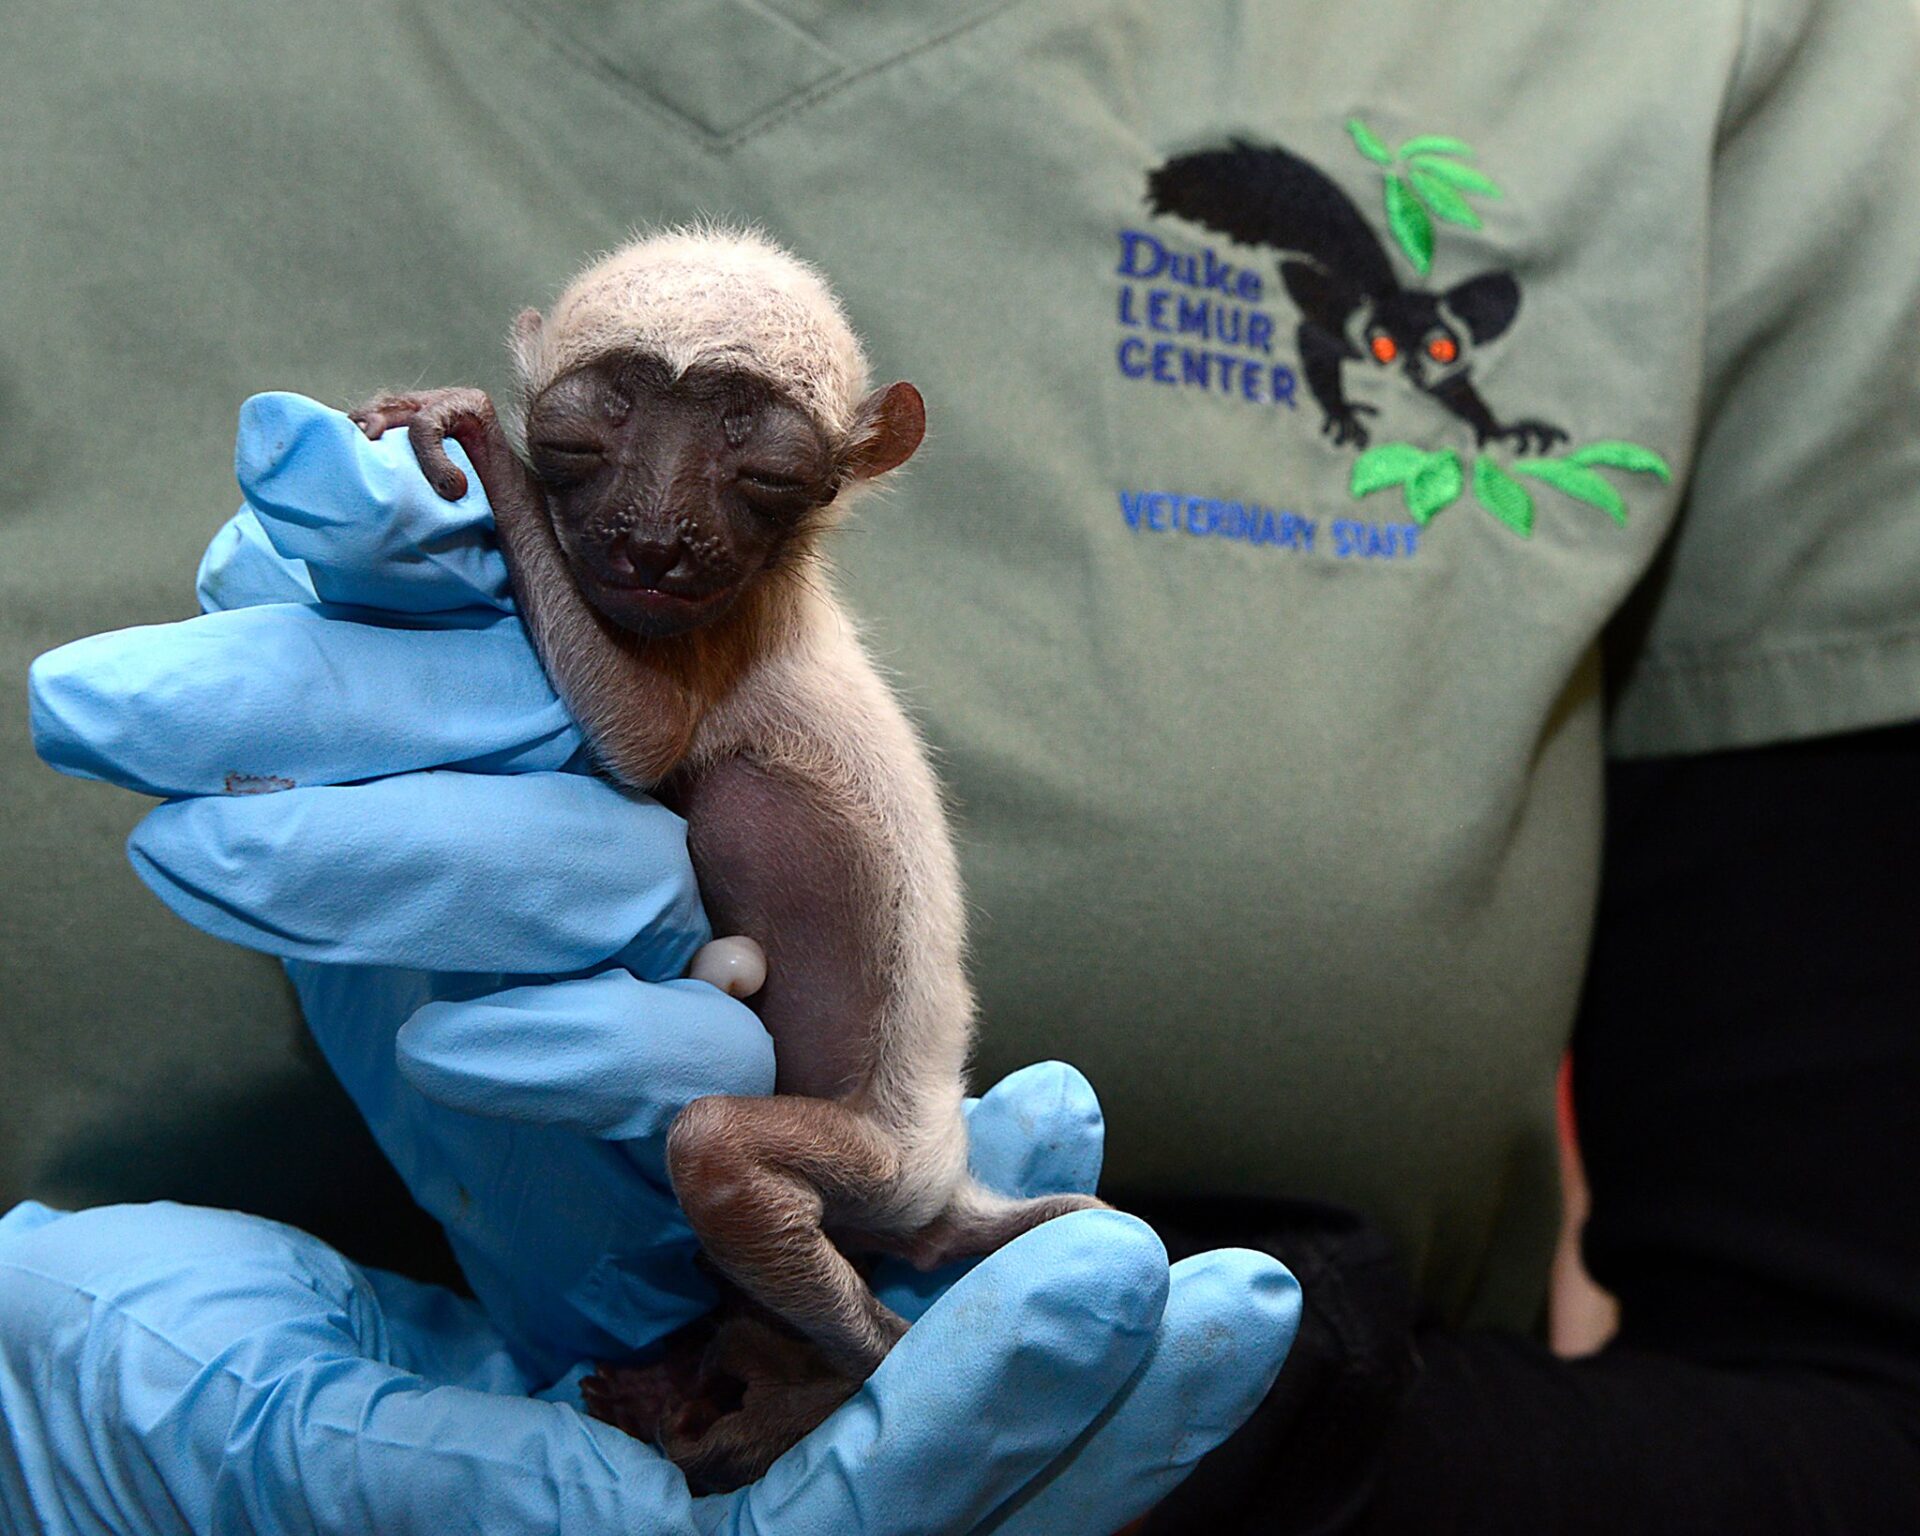 baby sifaka lemur at duke lemur center